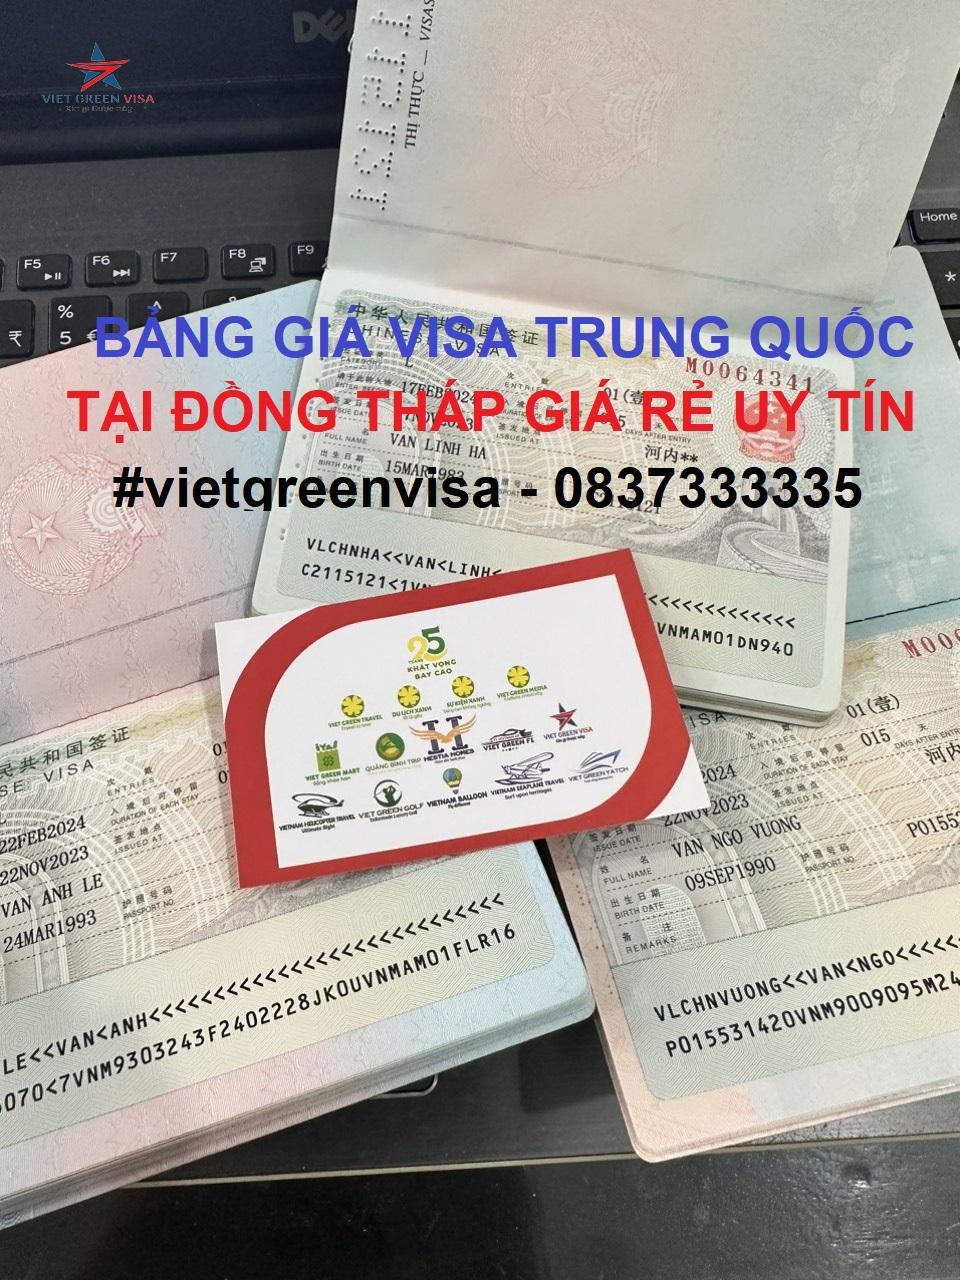 Dịch vụ xin visa Trung Quốc tại Đồng Tháp uy tín giá rẻ